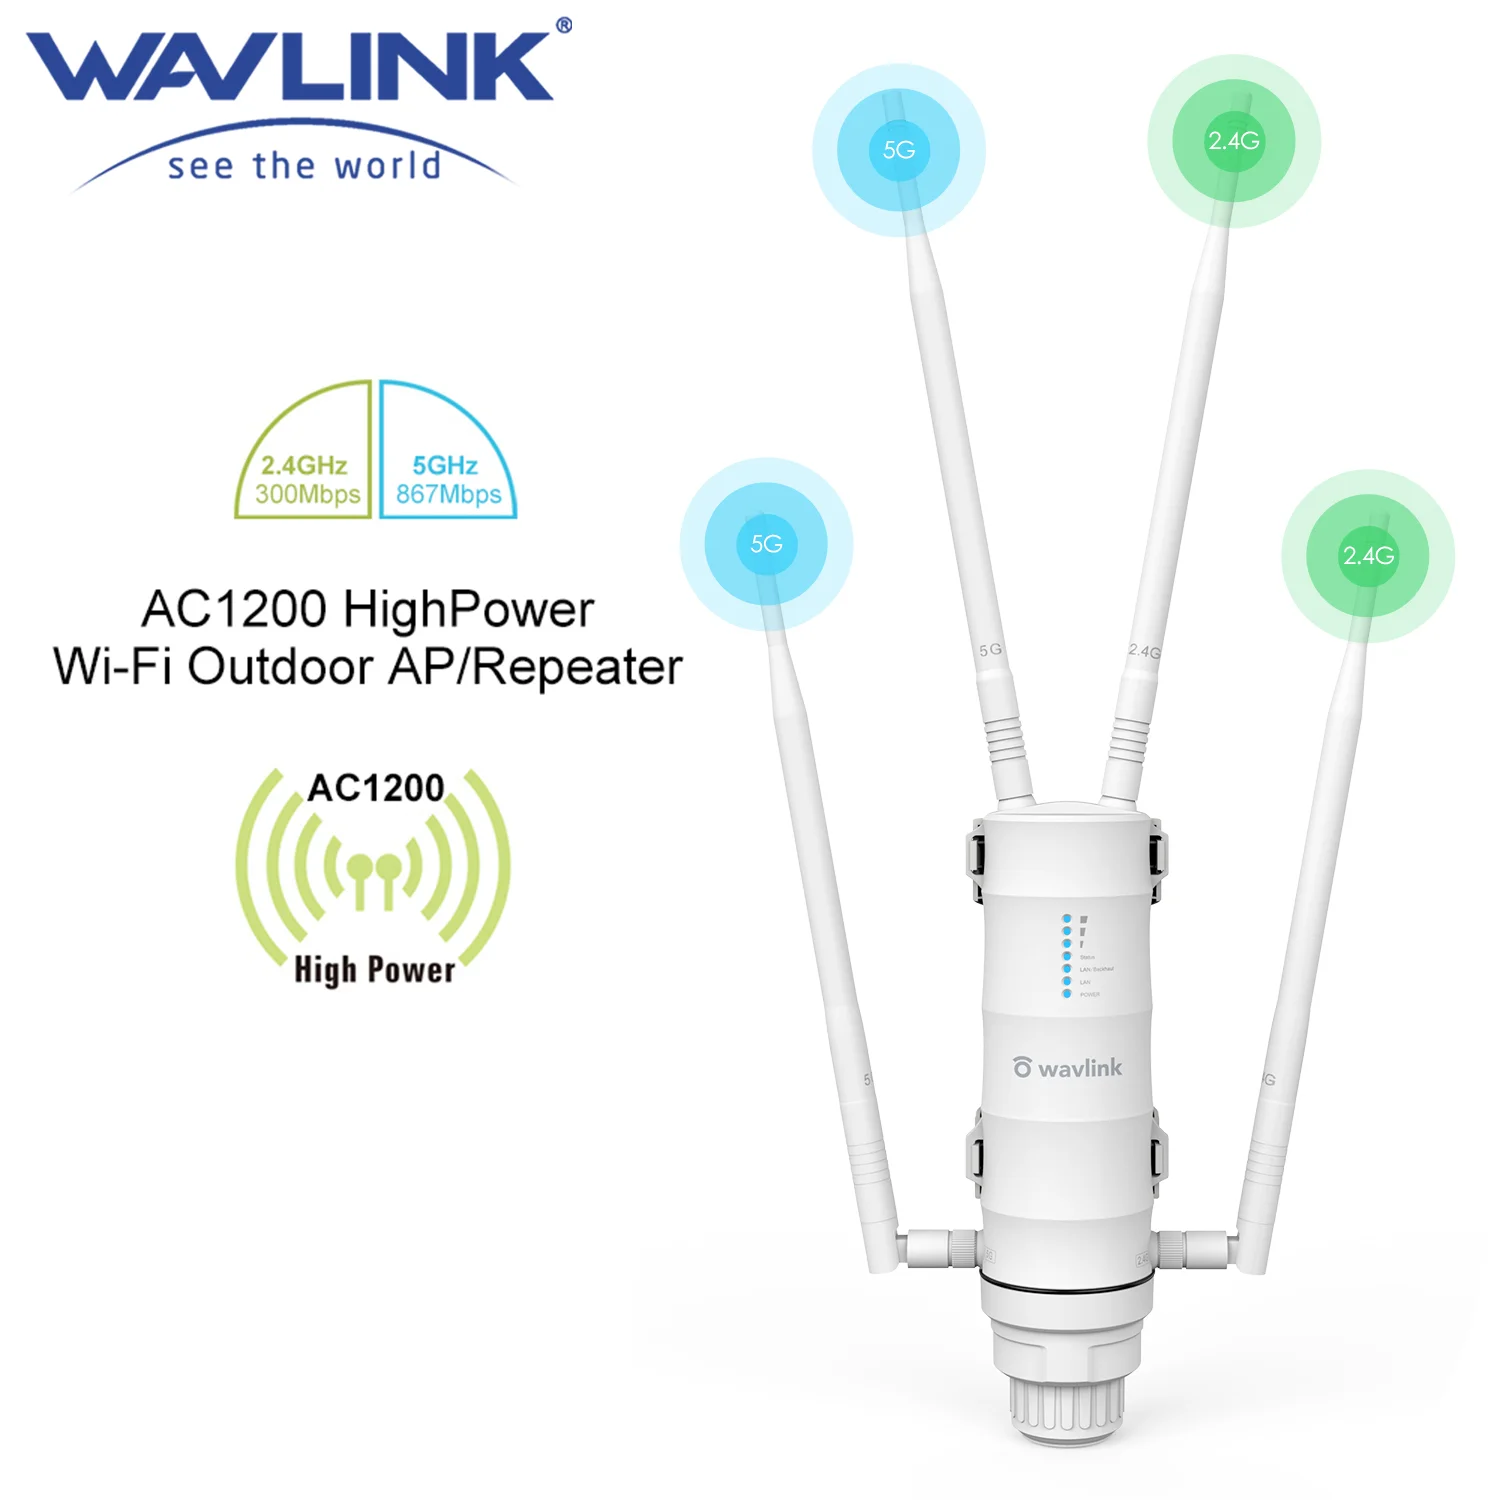 Wavlink-Amplificador de rango wifi AC1200 de alta potencia para exteriores, repetidor/ENRUTADOR con PoE y antenas de alta ganancia de 2,4G y 5G